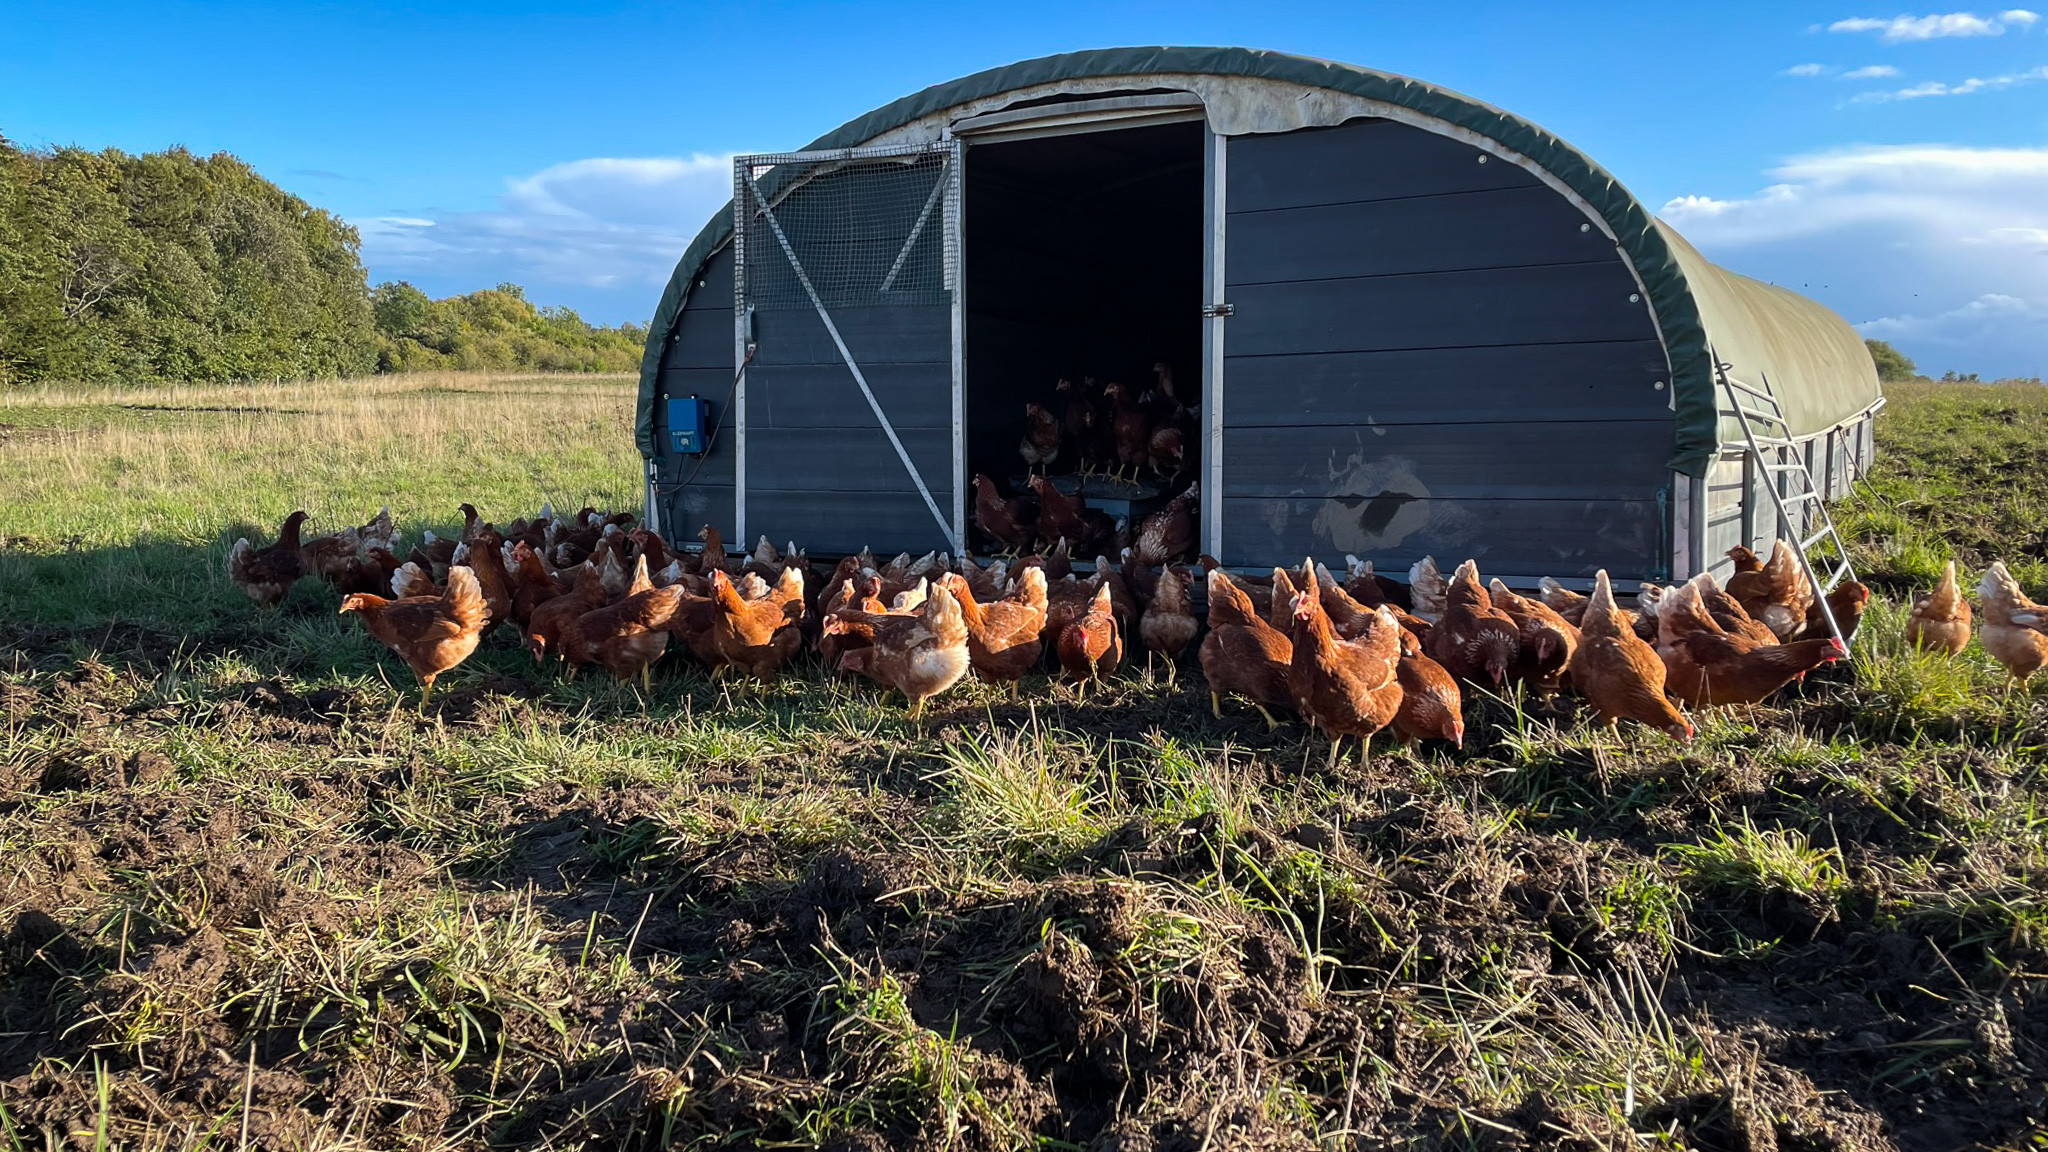 På billedet ses økologiske høns i og omkring en flytbar stald på en mark